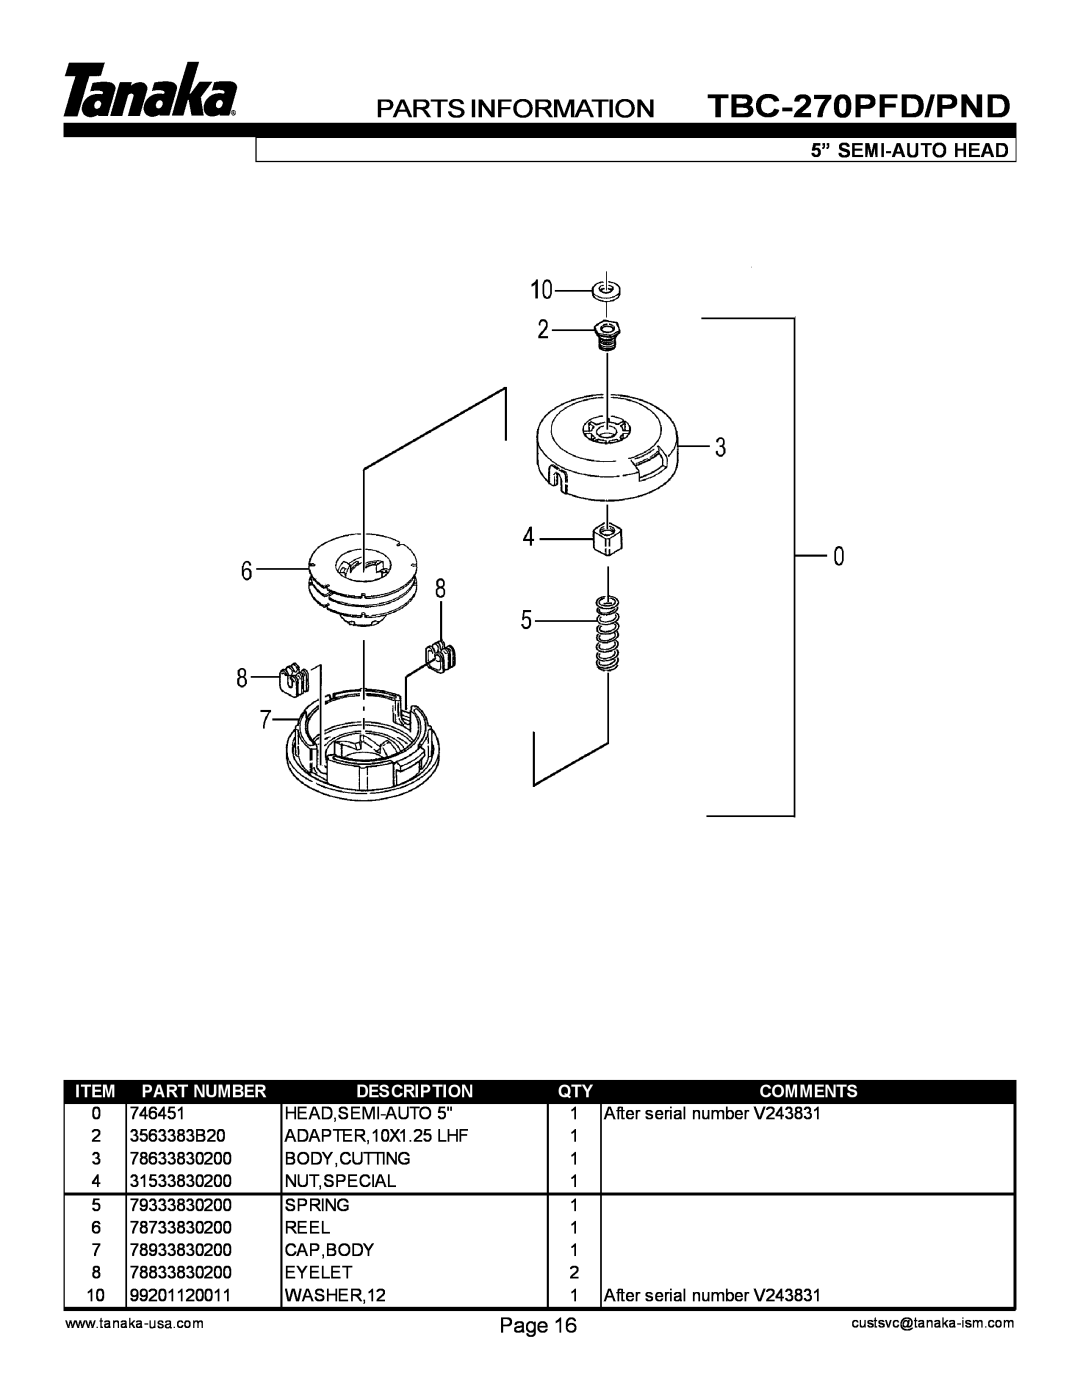 Tanaka TBC-270PND/PFD PARTS INFORMATION TBC-270PFD/PND, Page, 5” SEMI-AUTO HEAD, Part Number, Description, Comments 